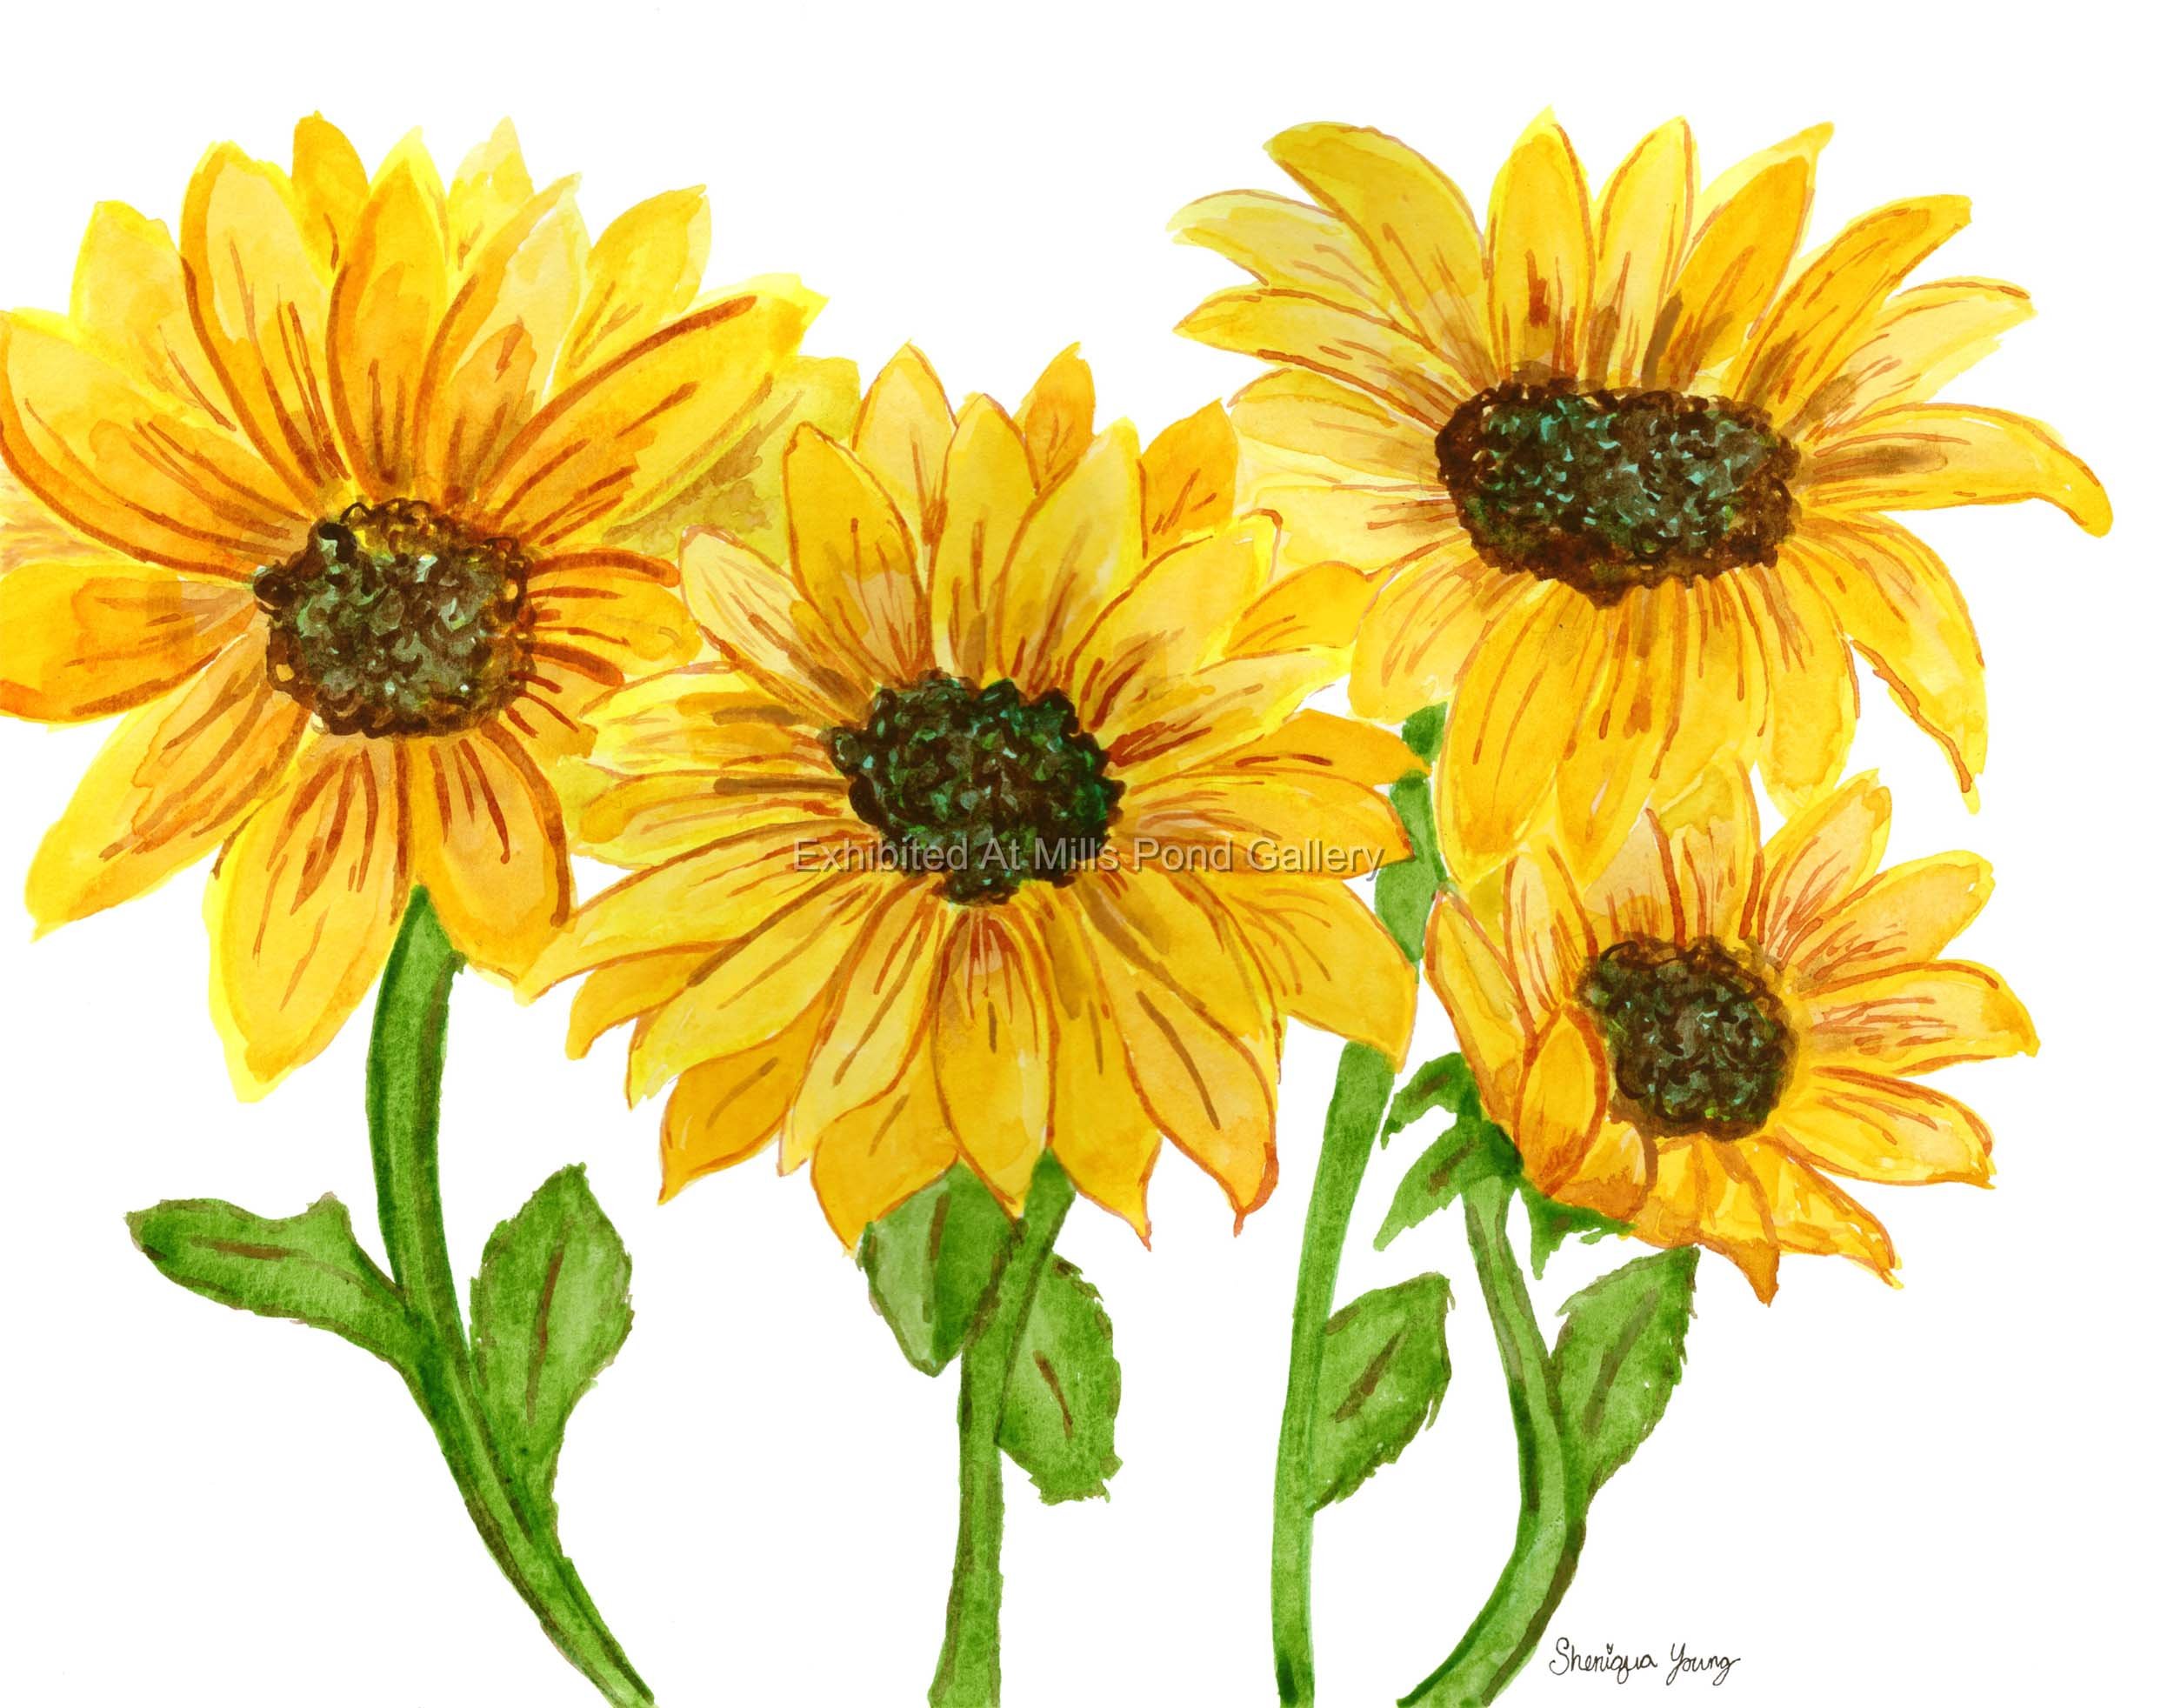 Sheniqua Young-Sunflowers #2-Watercolor.jpg